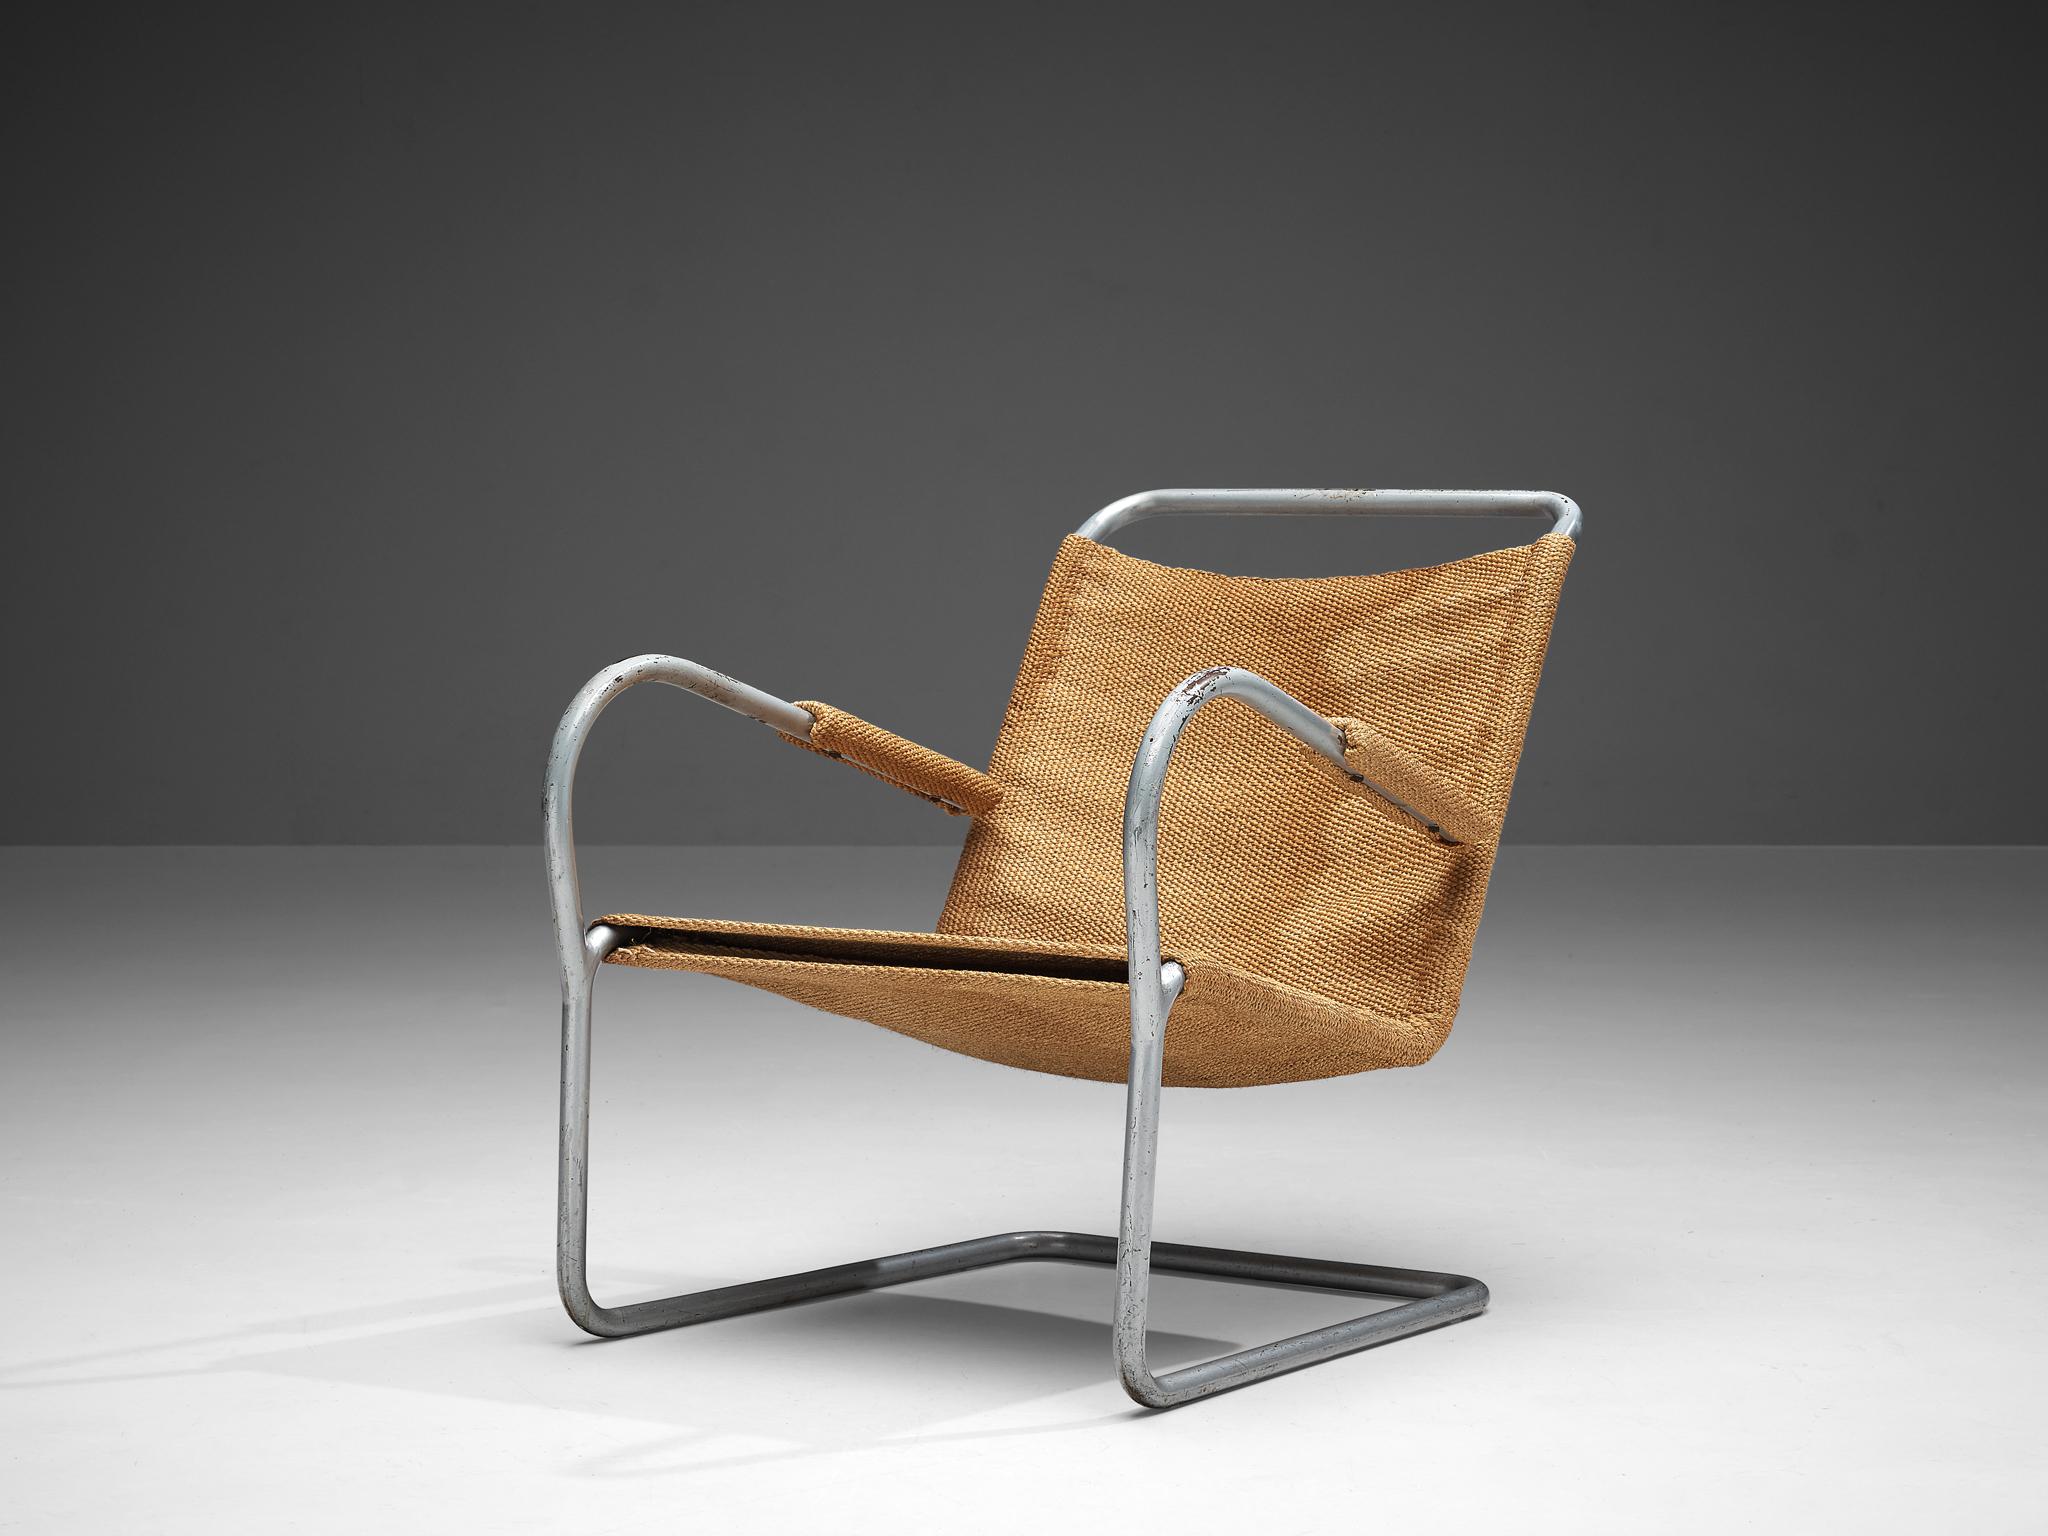 Bas van Pelt, fauteuil, métal, sisal, Pays-Bas, années 1930.

Cette chaise confortable et originale a été conçue par le designer d'intérieur et de mobilier néerlandais Bas van Pelt (1900-1945) et a été fabriquée par E.M.S. Overschie. Cette chaise